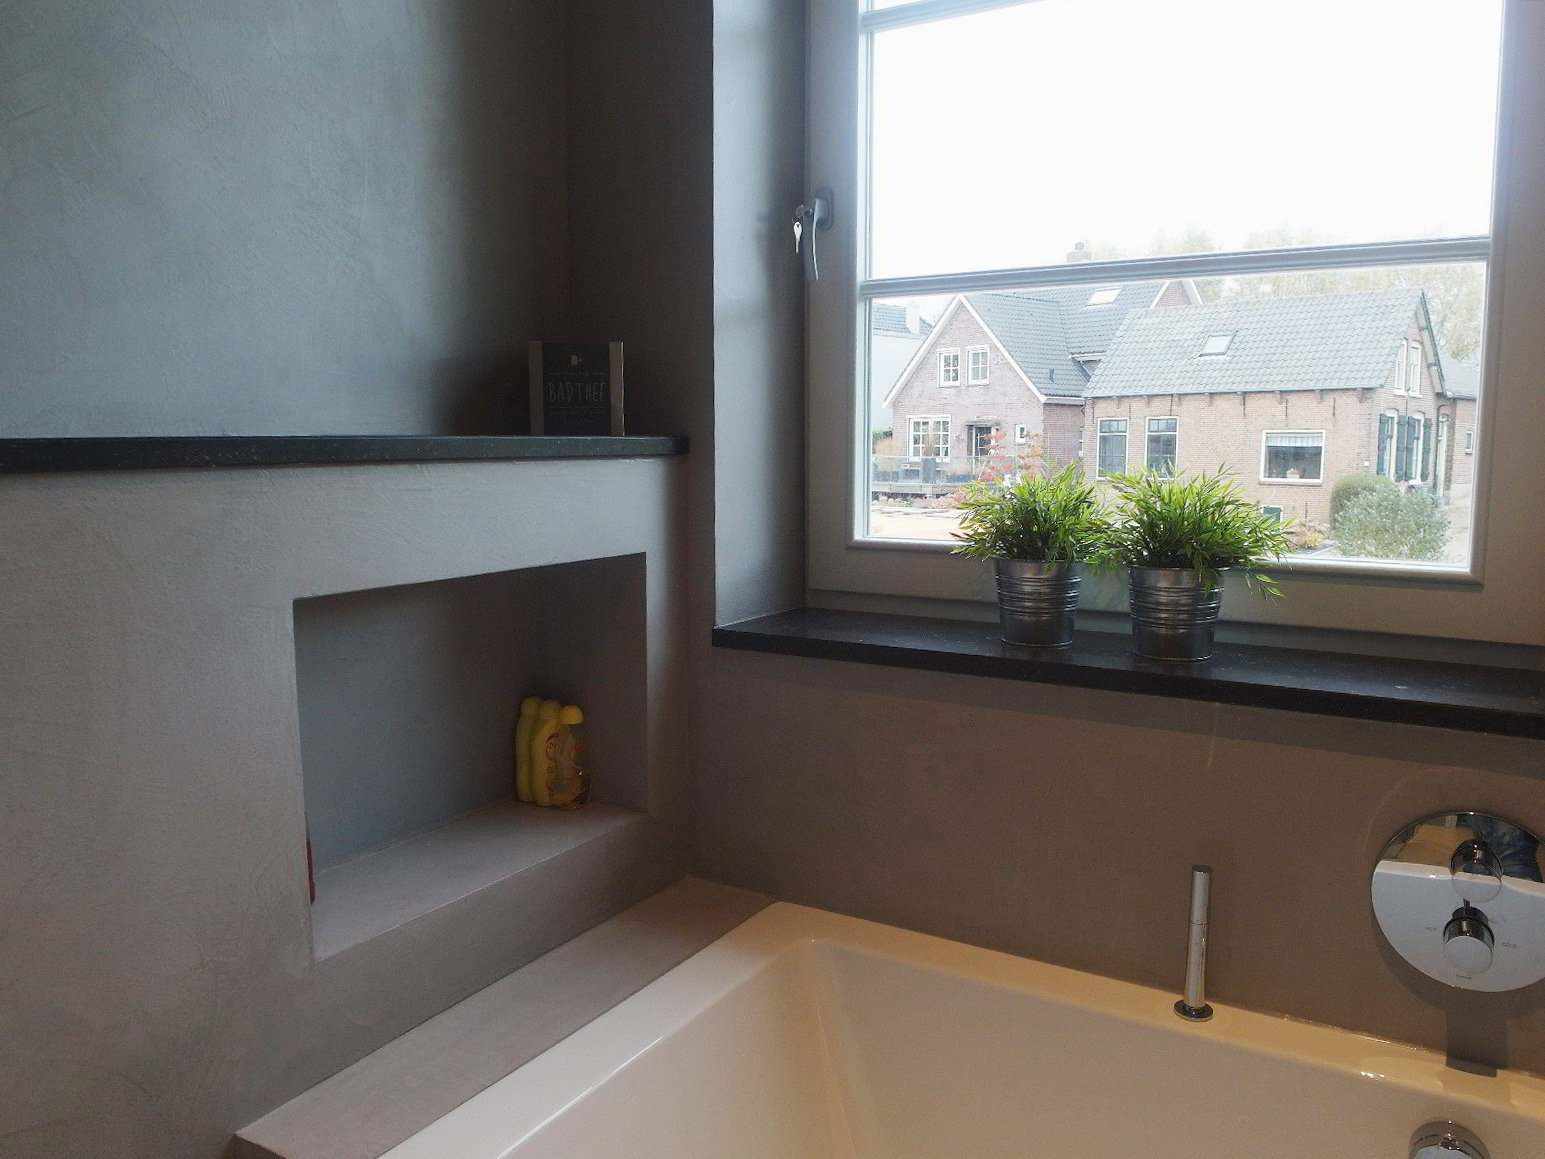 Mikrosement på veggen, gulvet og møblene på et bad i Nederland i Decas-prosjektet.